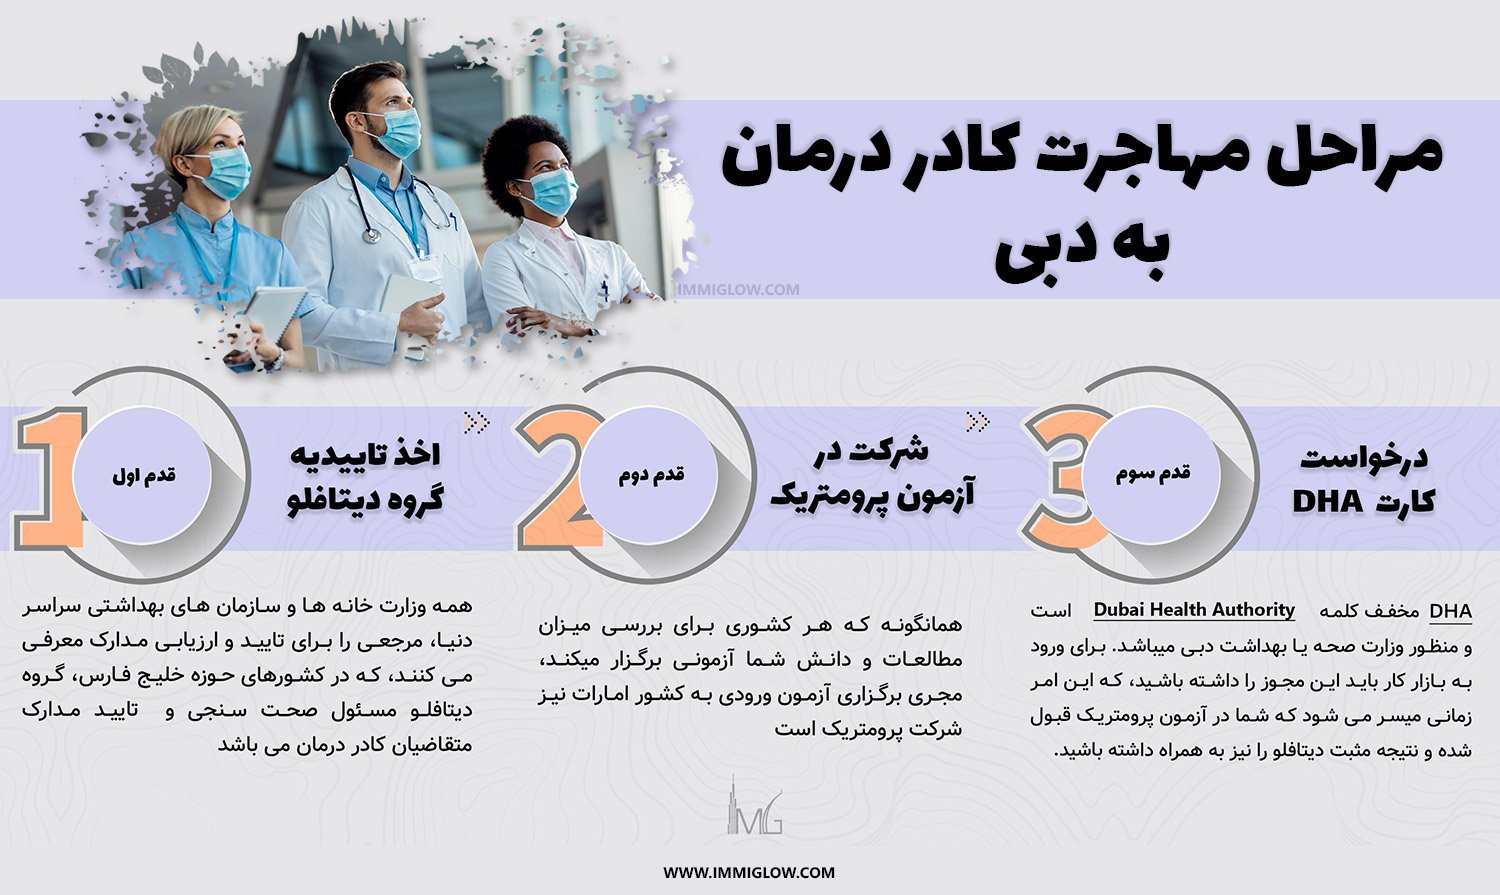 مراحل دریافت کارت کار وزارت بهداشت دبی